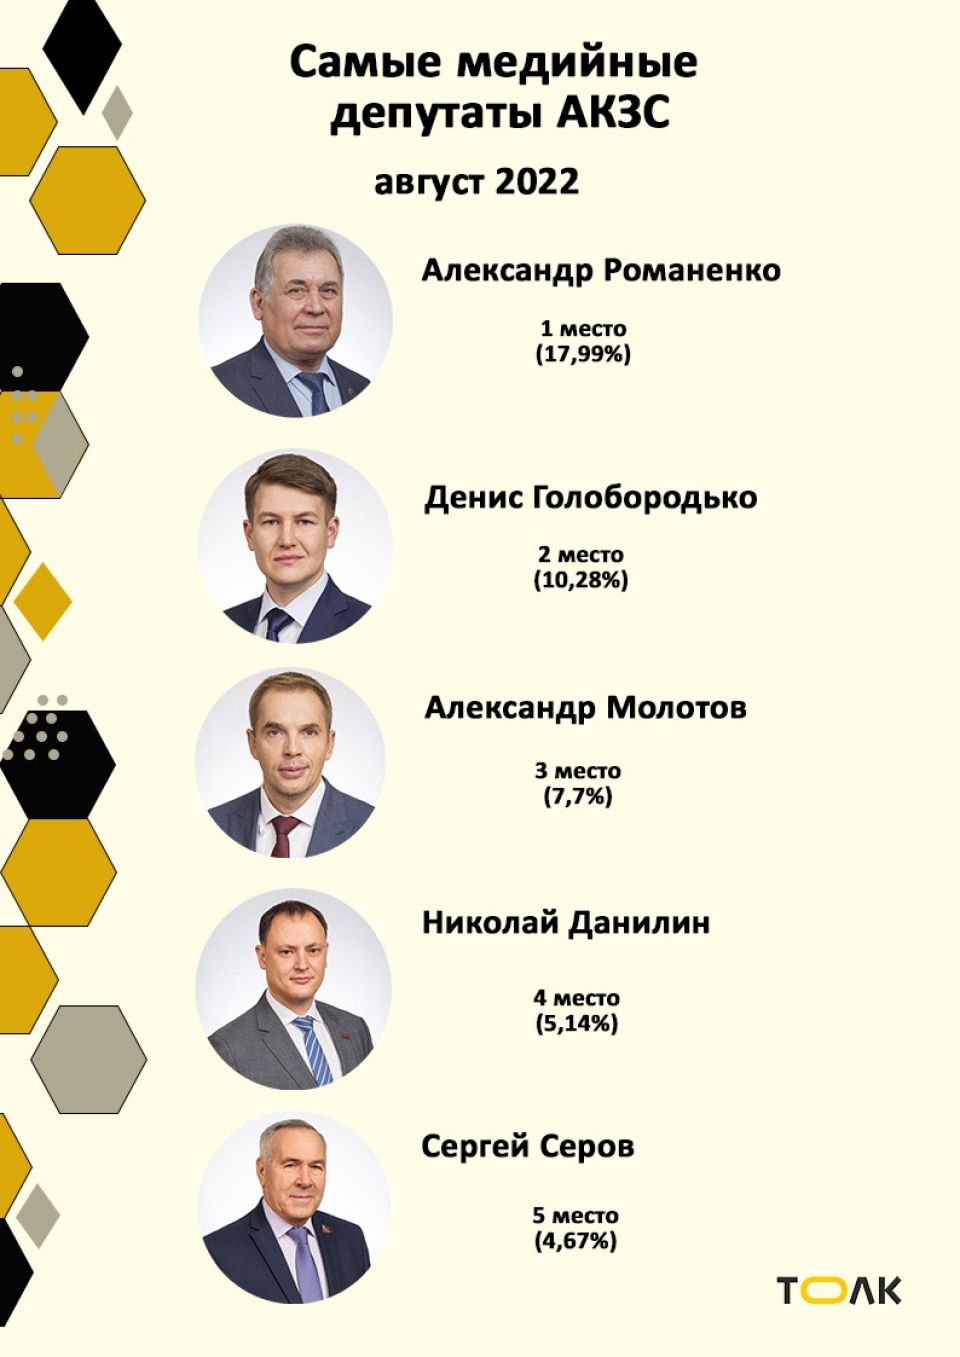 Рейтинг медийности депутатов АКЗС в августе 2022 года